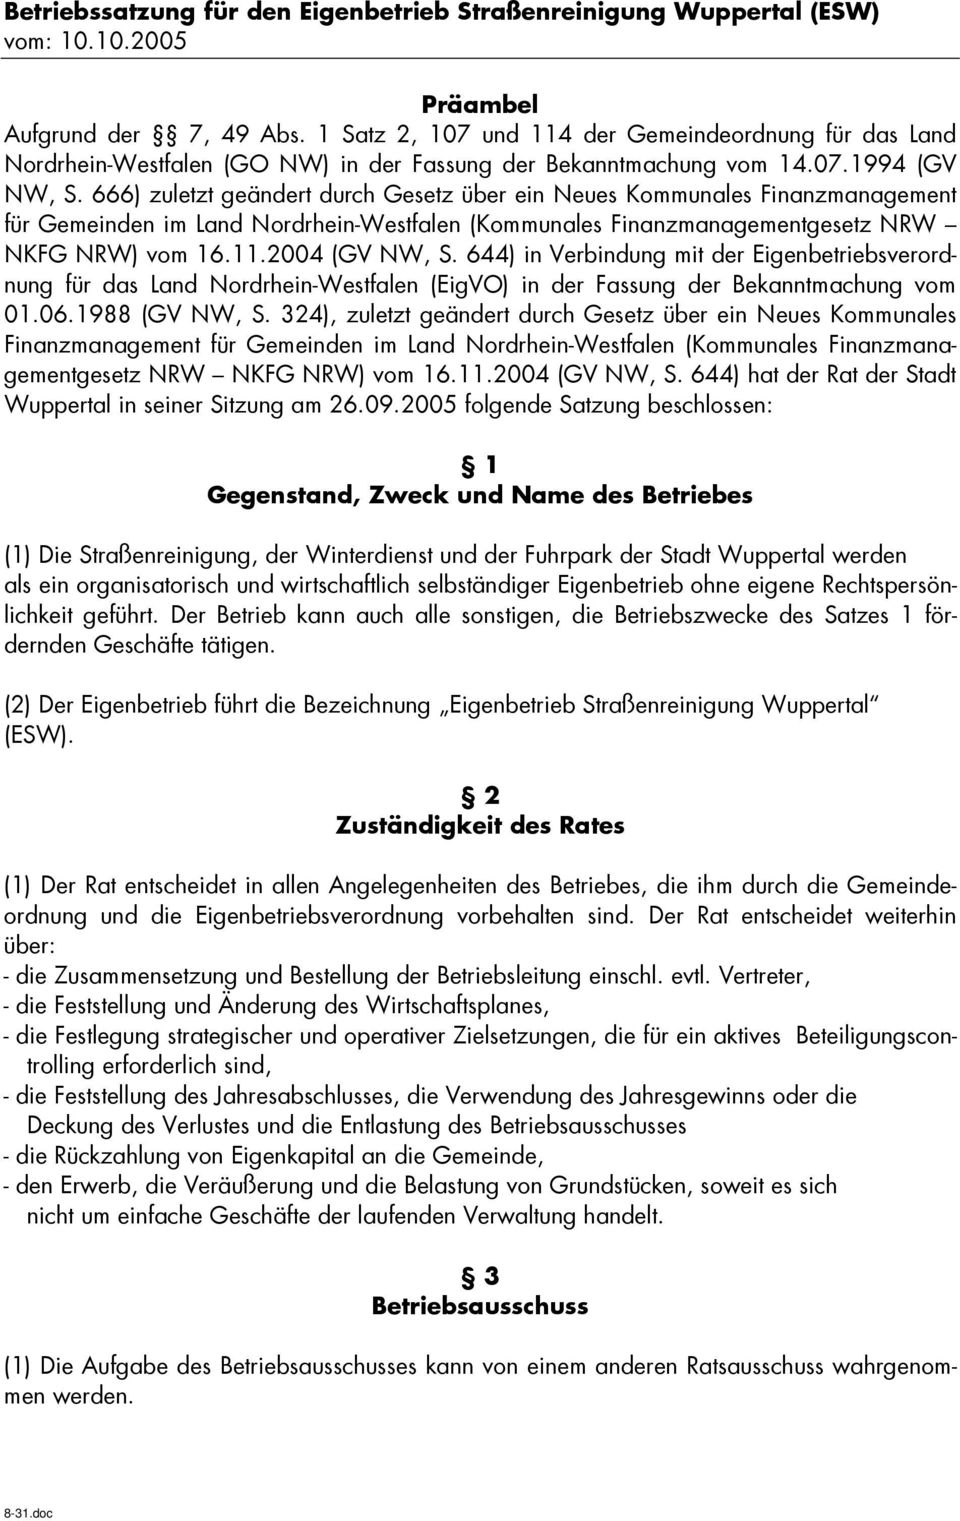 666) zuletzt geändert durch Gesetz über ein Neues Kommunales Finanzmanagement für Gemeinden im Land Nordrhein-Westfalen (Kommunales Finanzmanagementgesetz NRW NKFG NRW) vom 16.11.2004 (GV NW, S.